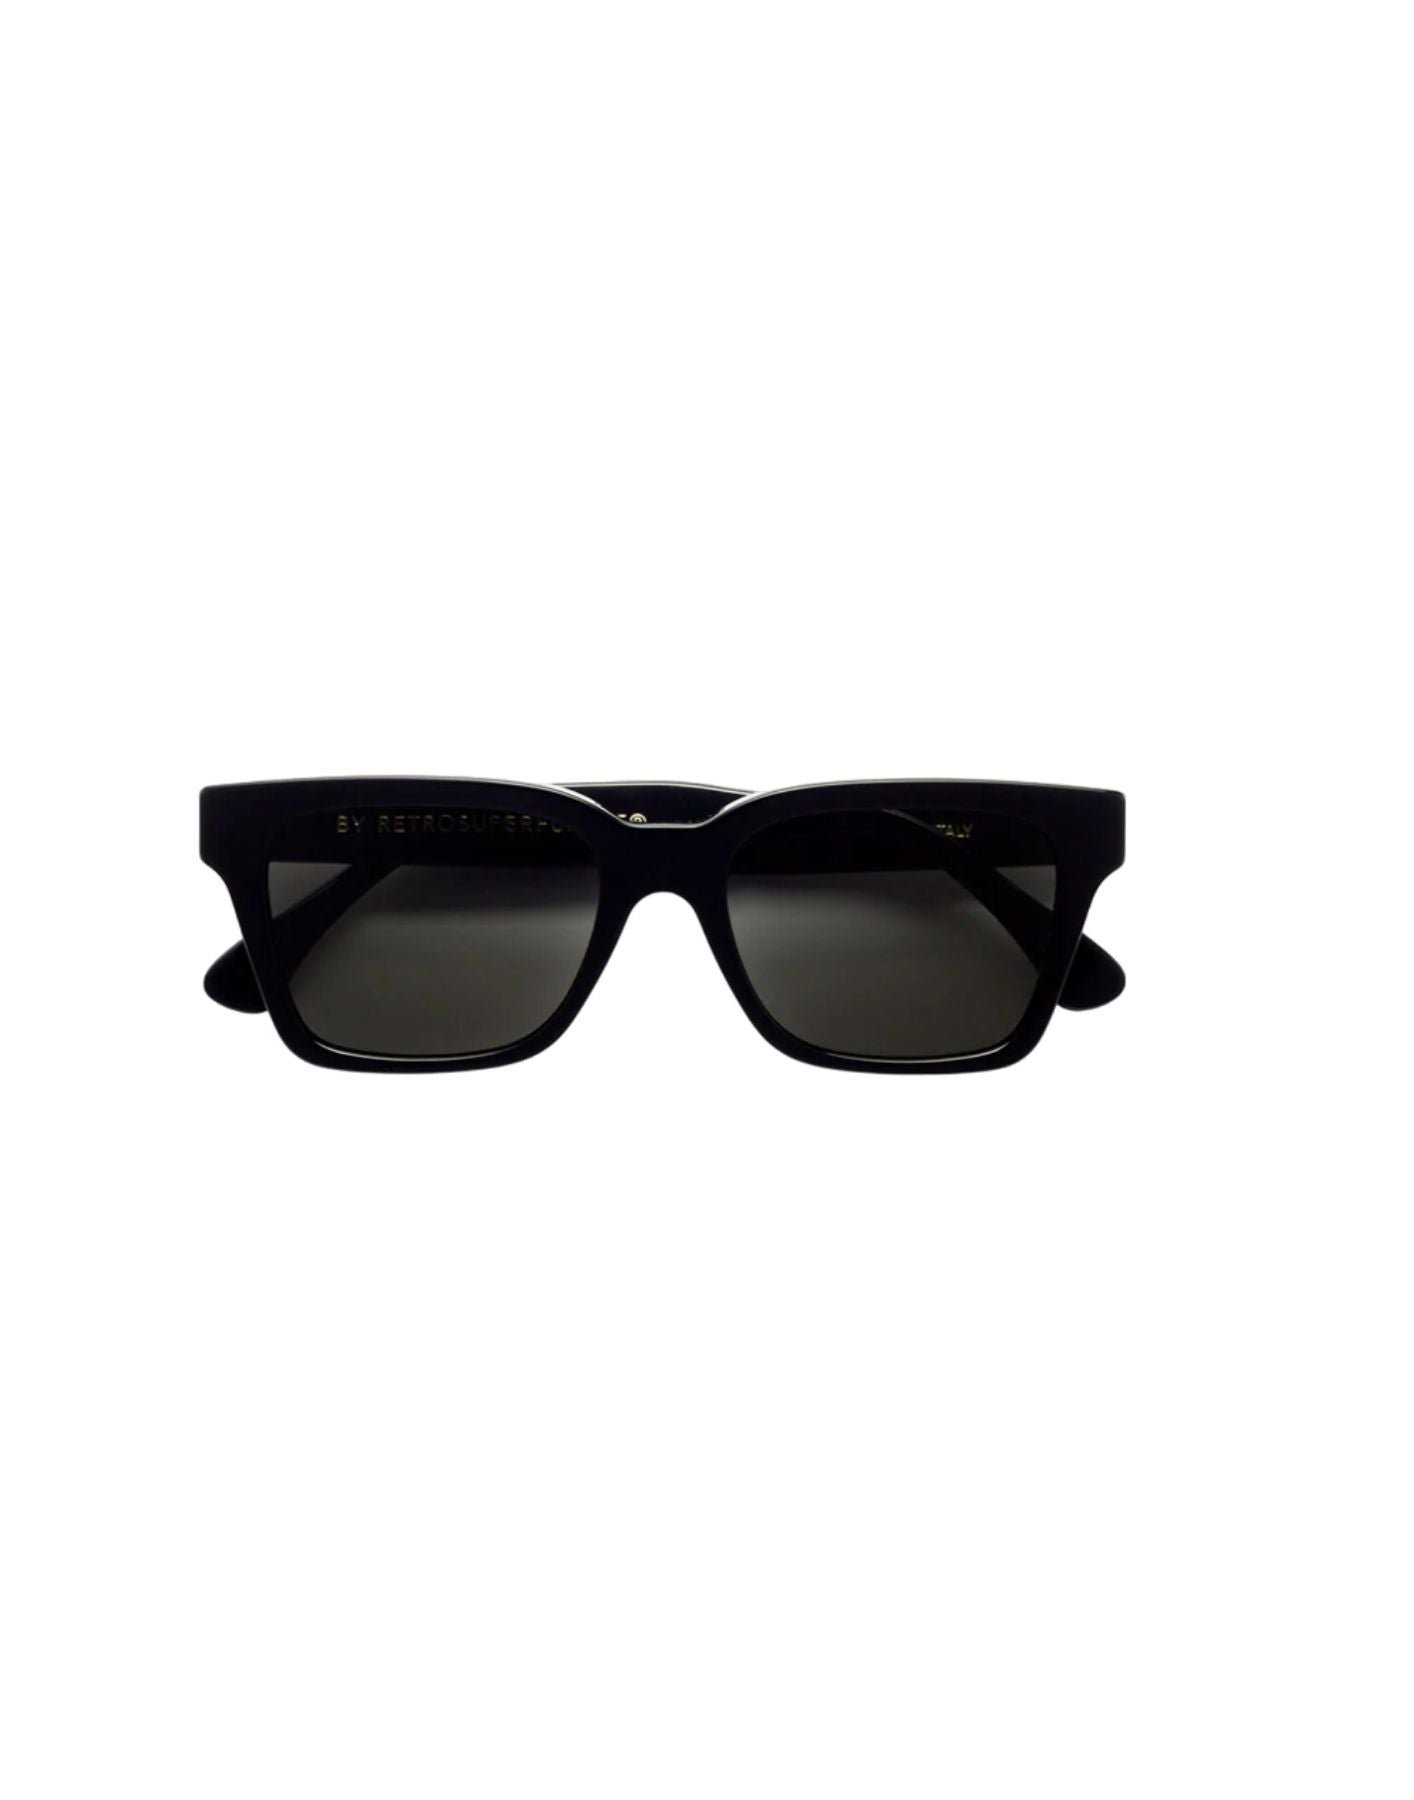 Sunglasses unisex AMERICA BLACK C2N Retrosuperfuture